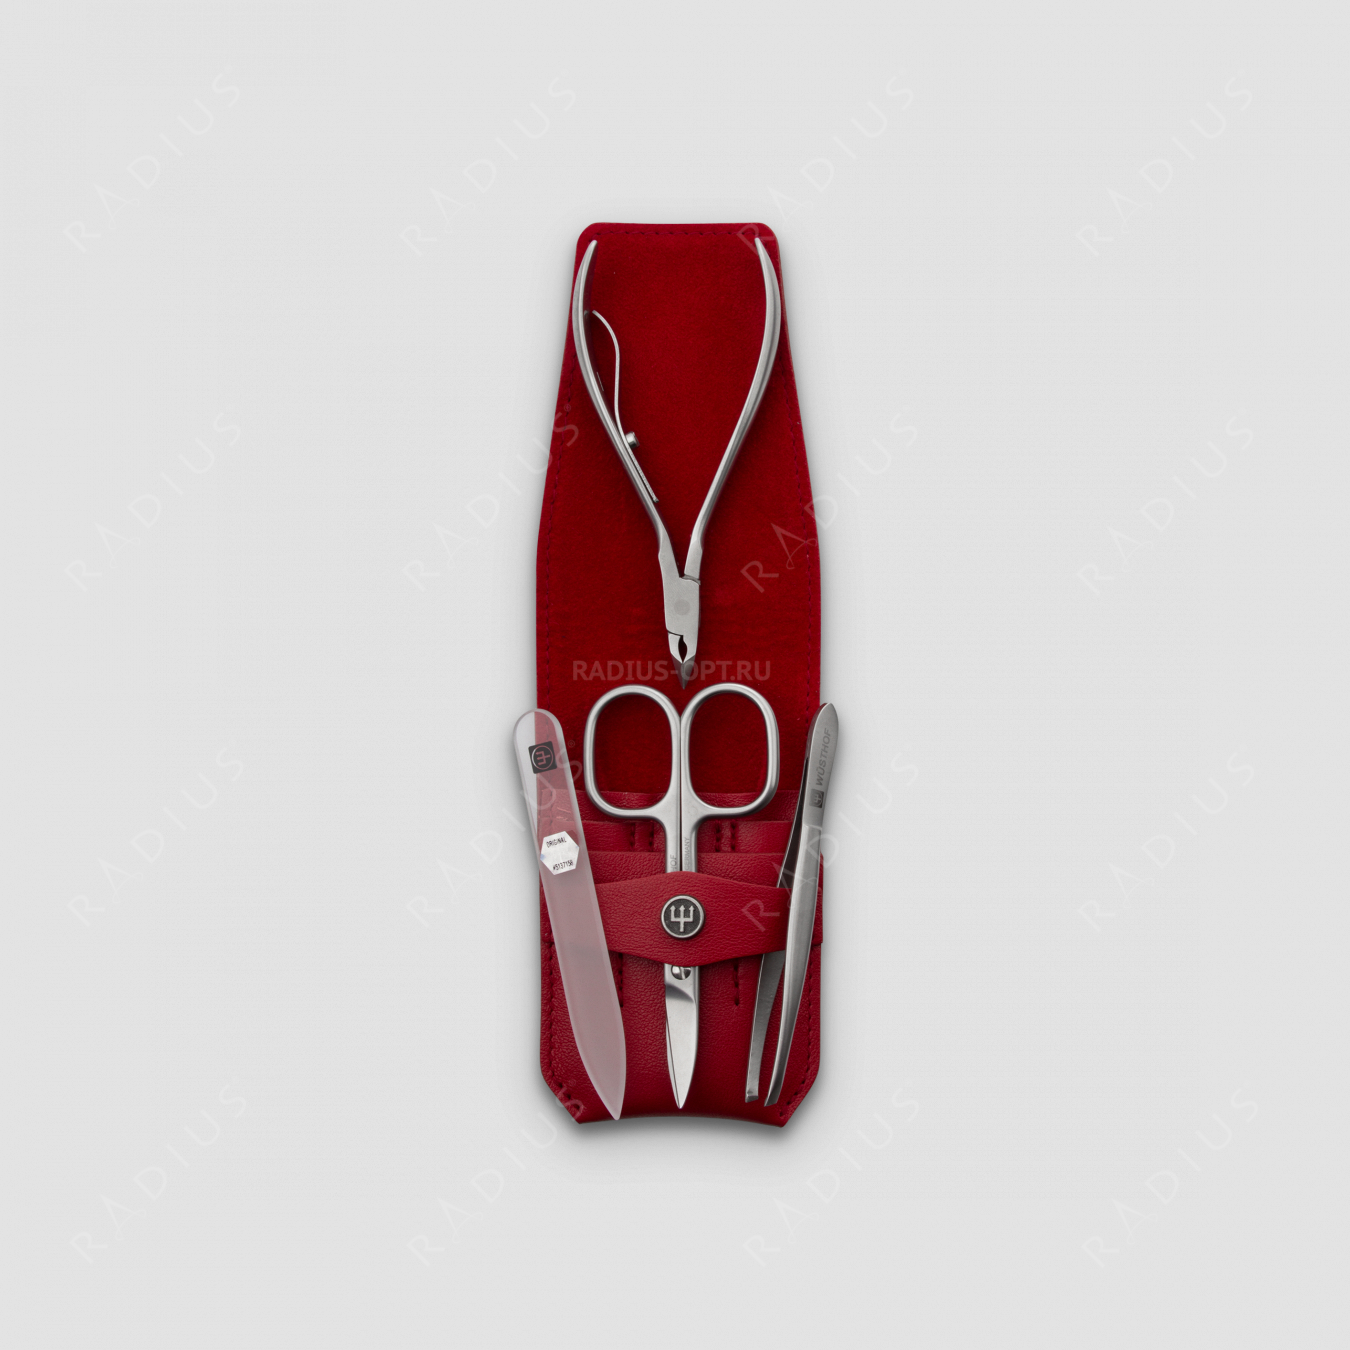 Набор маникюрный 4 предмета в кожаном футляре, цвет красный, сатин, серия Manicure sets, WUESTHOF, Германия